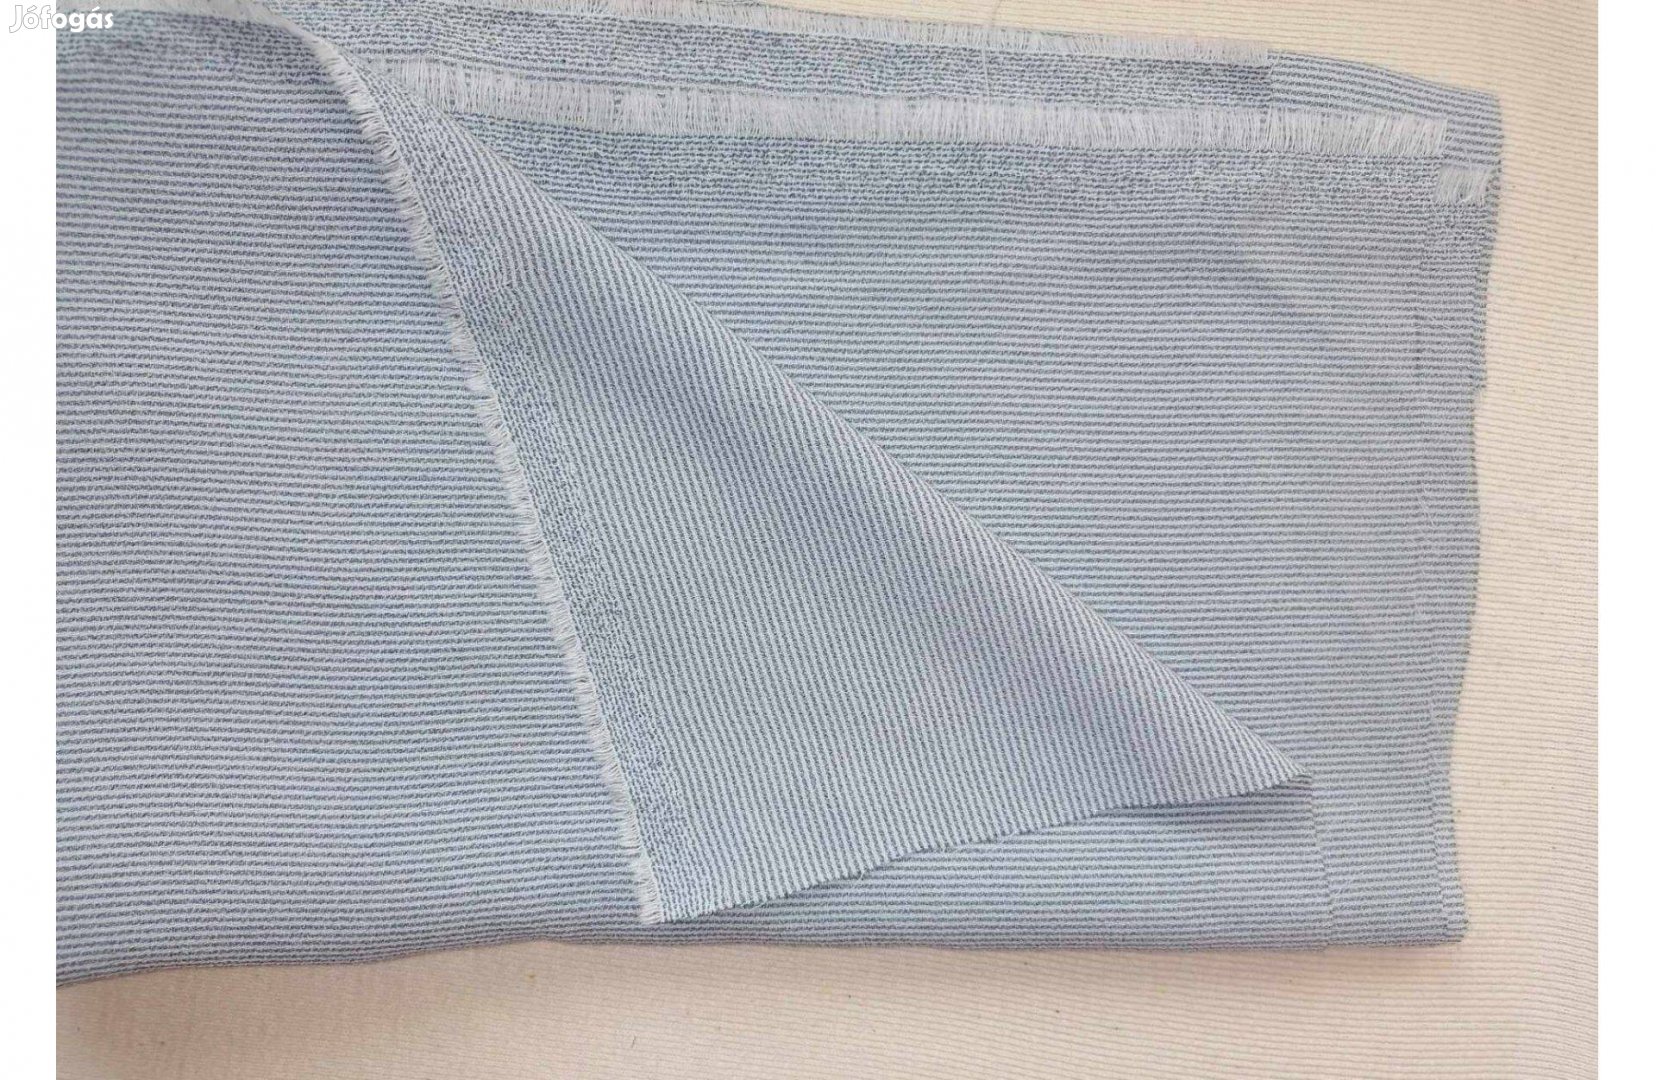 Méteráru textil (vékony, selyem) kék, fehér csíkos 1 db